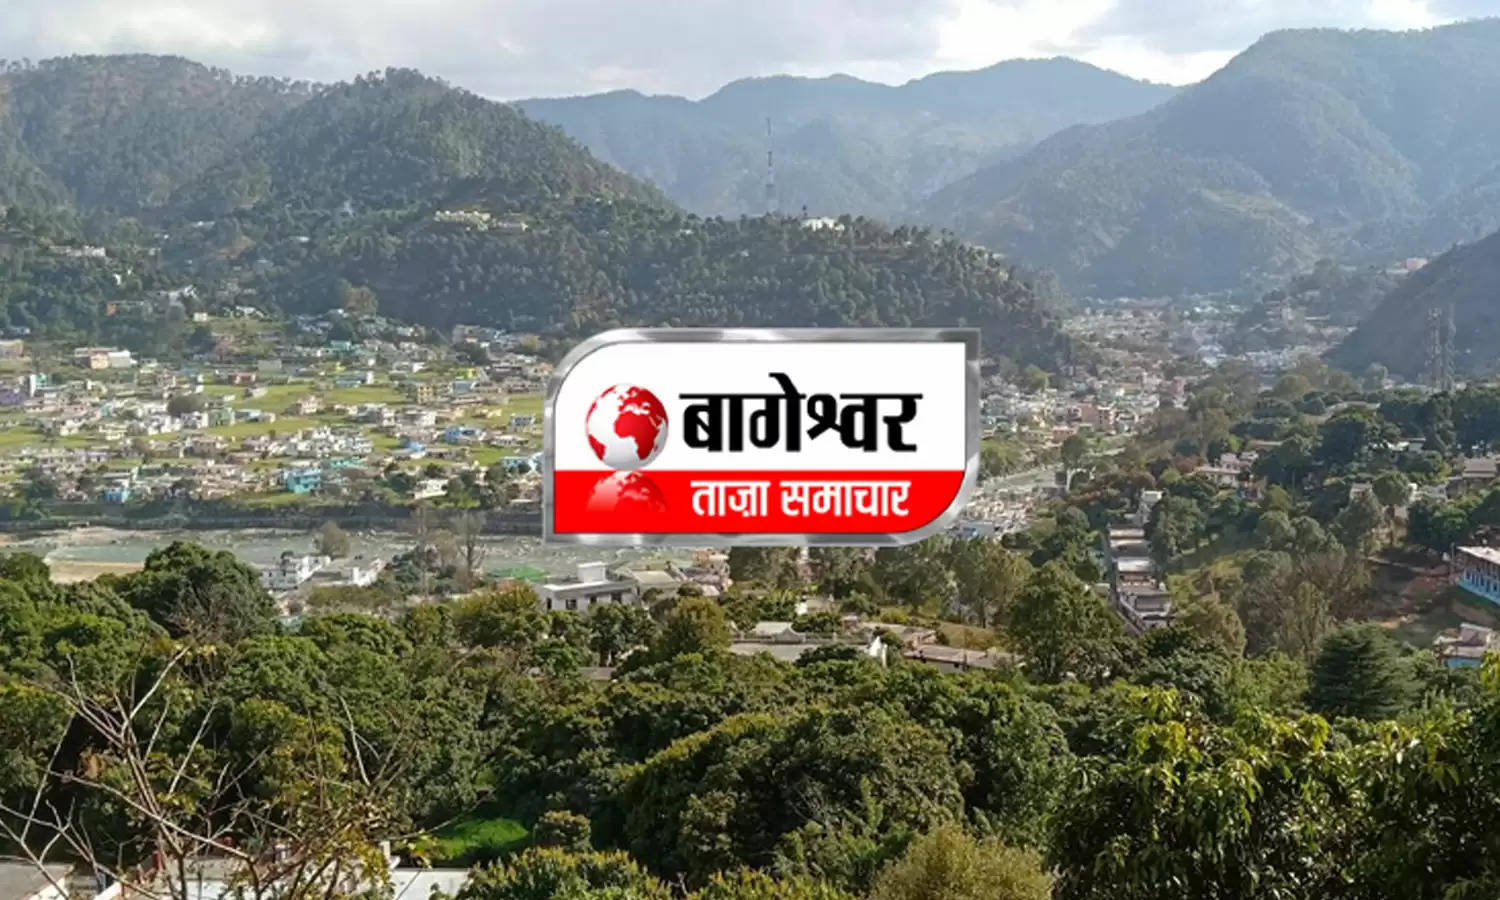 Uttarakhand News Bulletin-12 : बागेश्वर में 31 सड़कें बंद, लोग परेशान, जानिए बागेश्वर की ऐसी ही तमाम छोटी बड़ी खबरें...